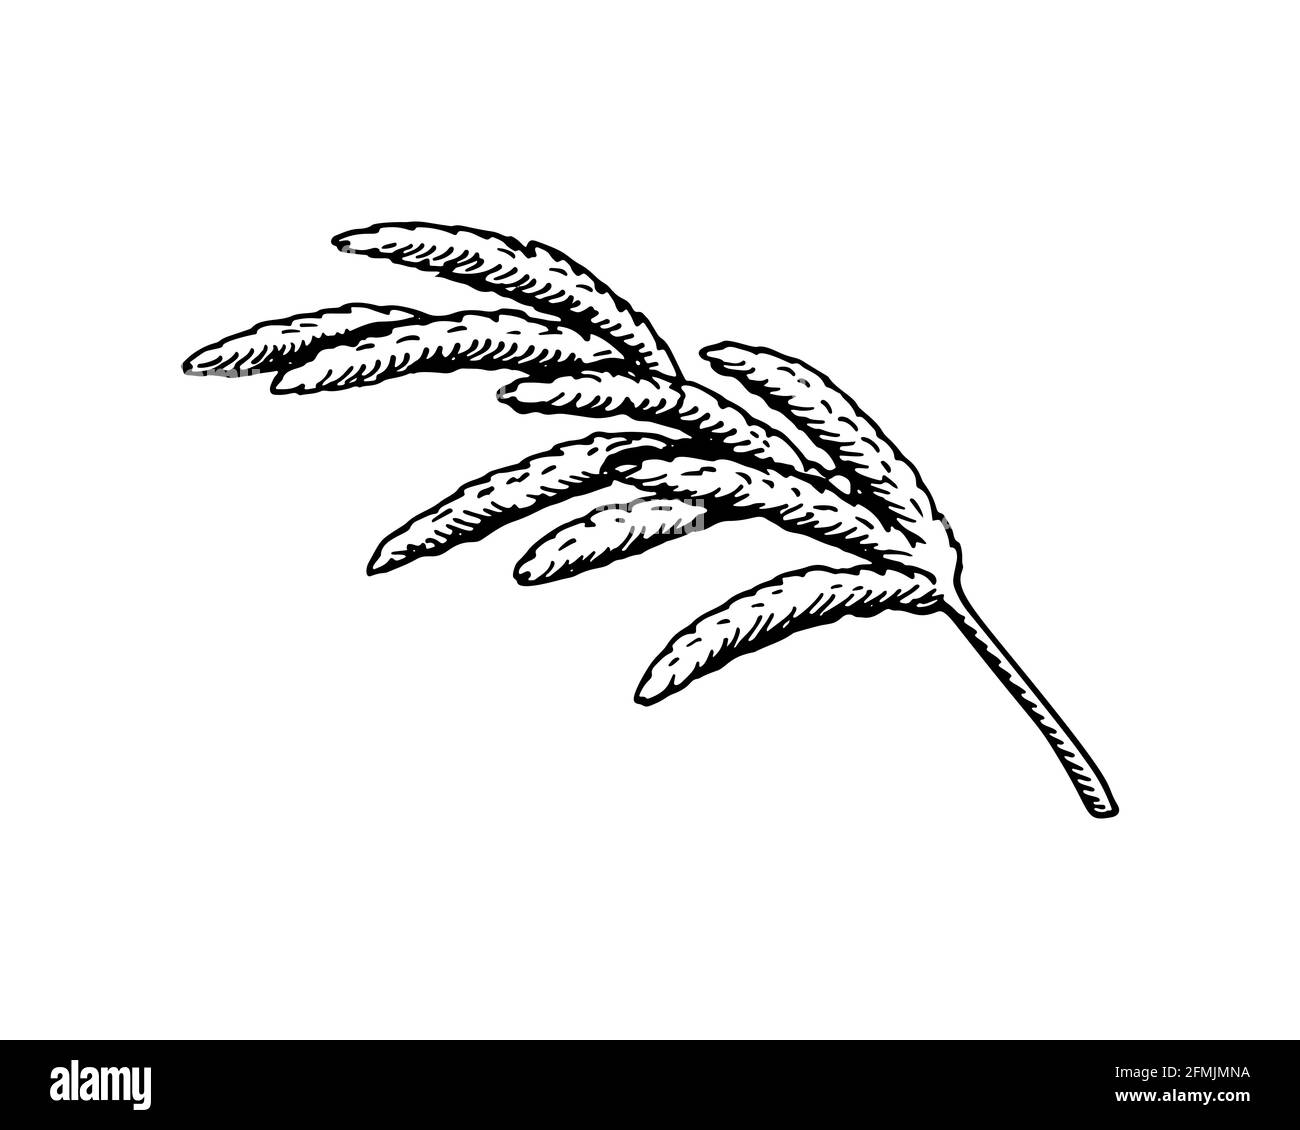 Handgezeichnetes Pampagras isoliert auf weißem Hintergrund. Vektorgrafik im Skizzenstil Stock Vektor